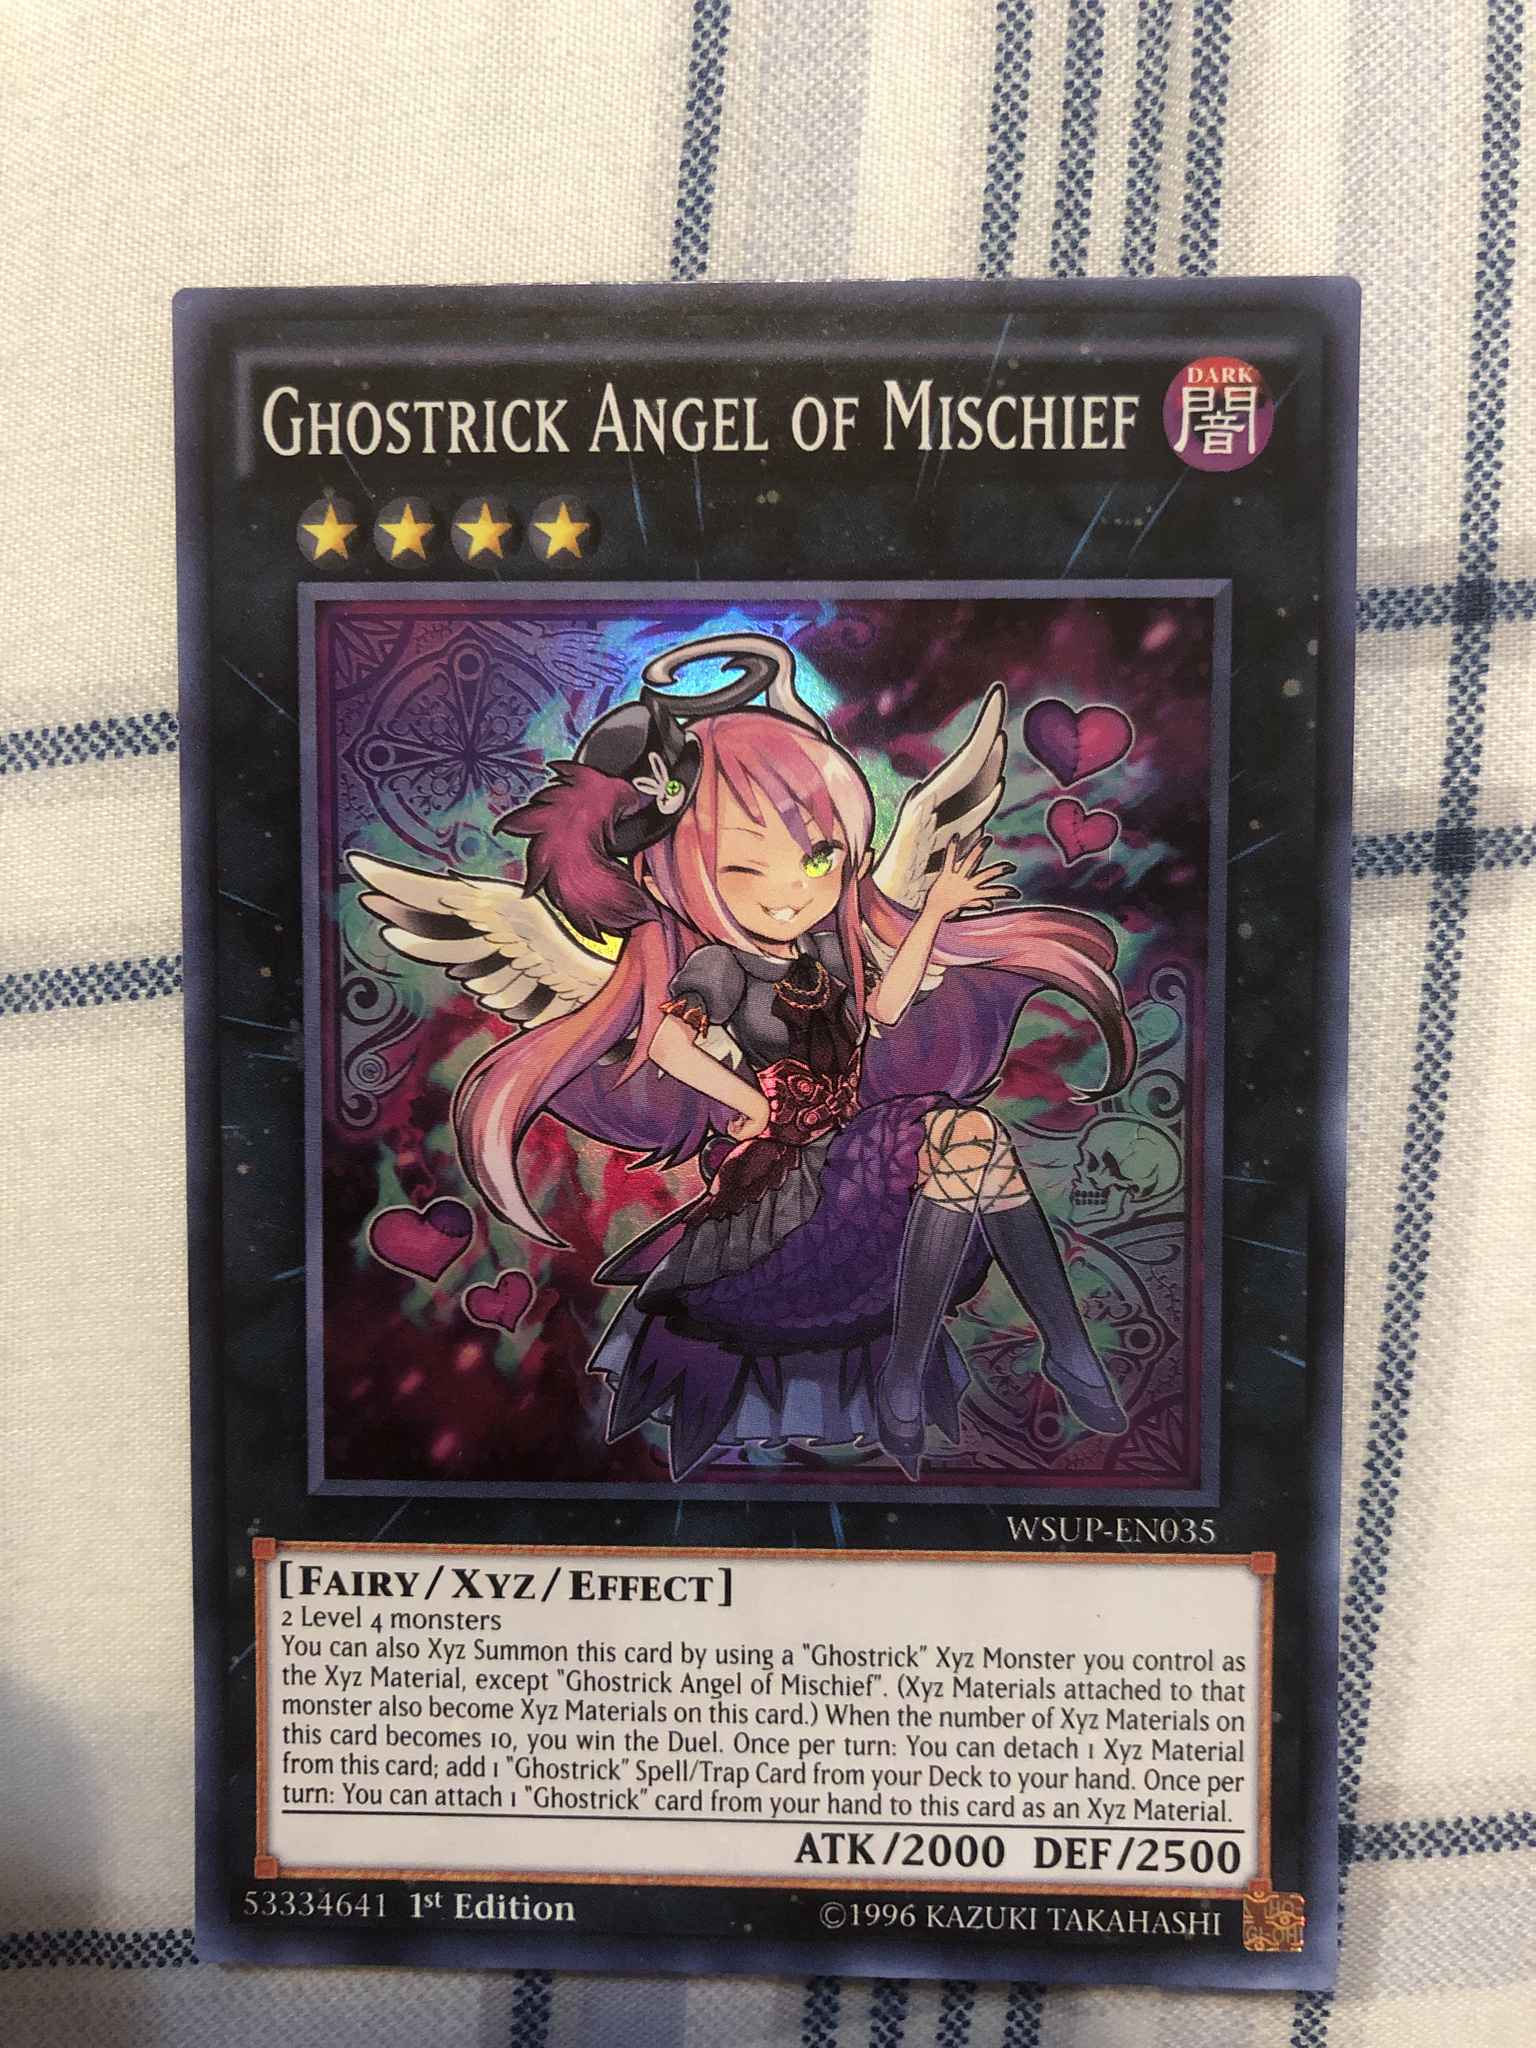 Ghostrick angel of mischief